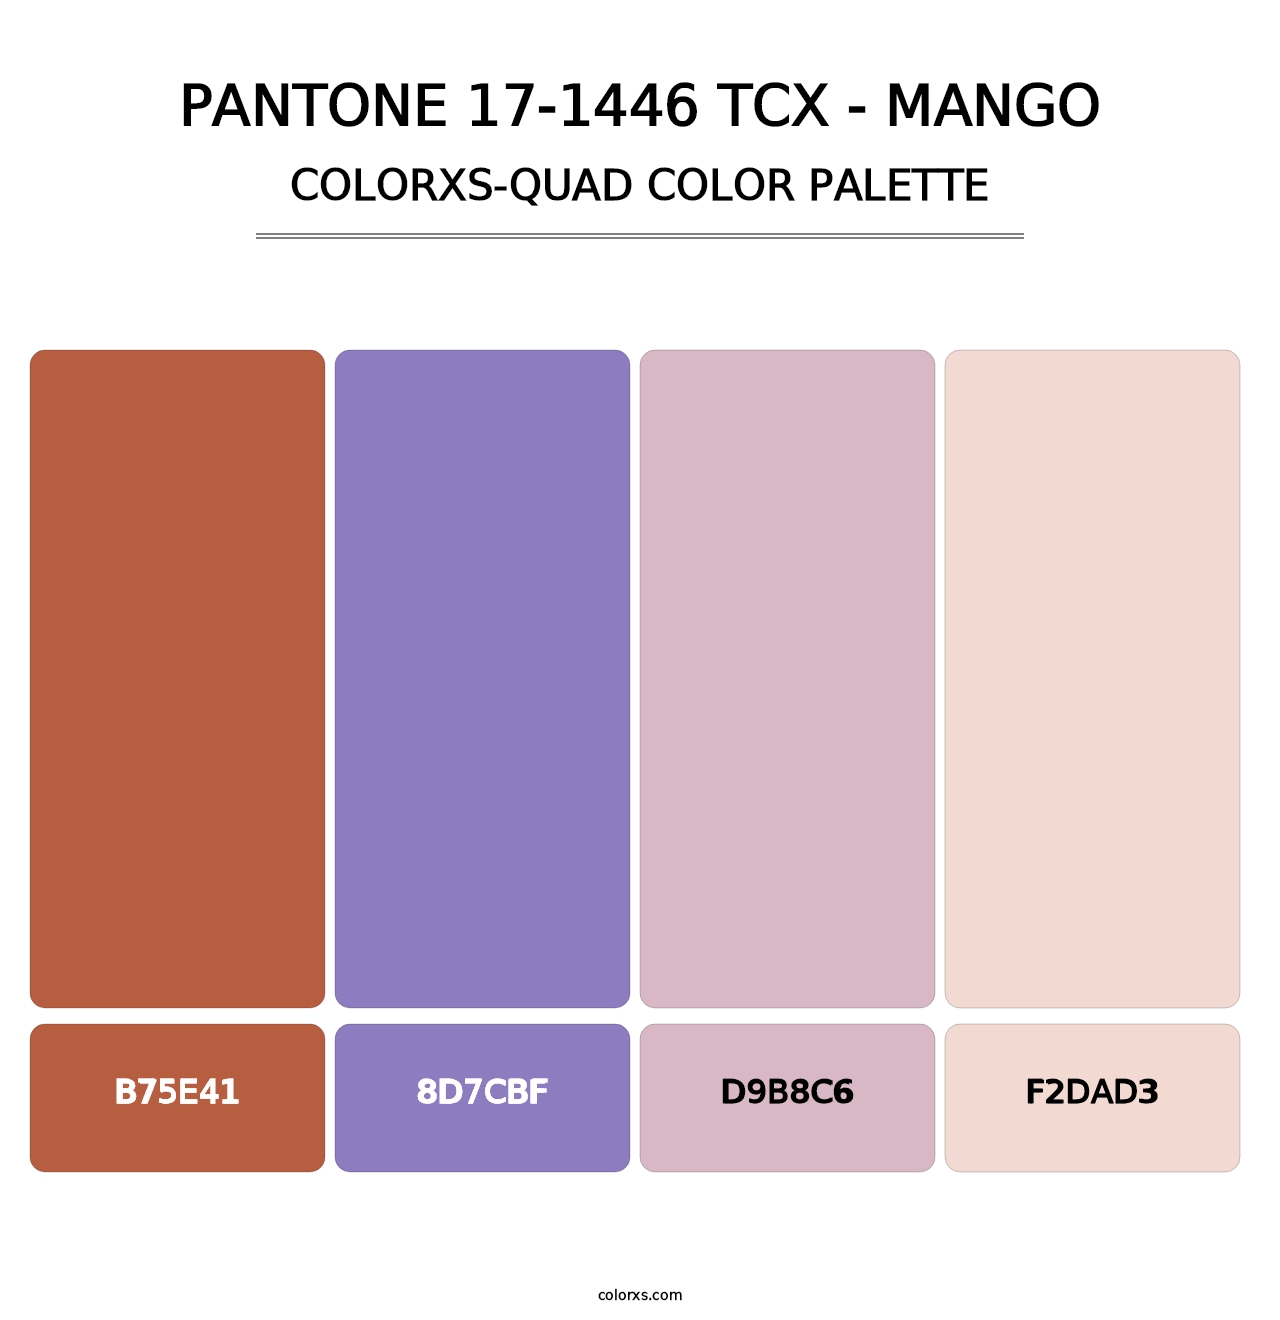 PANTONE 17-1446 TCX - Mango - Colorxs Quad Palette